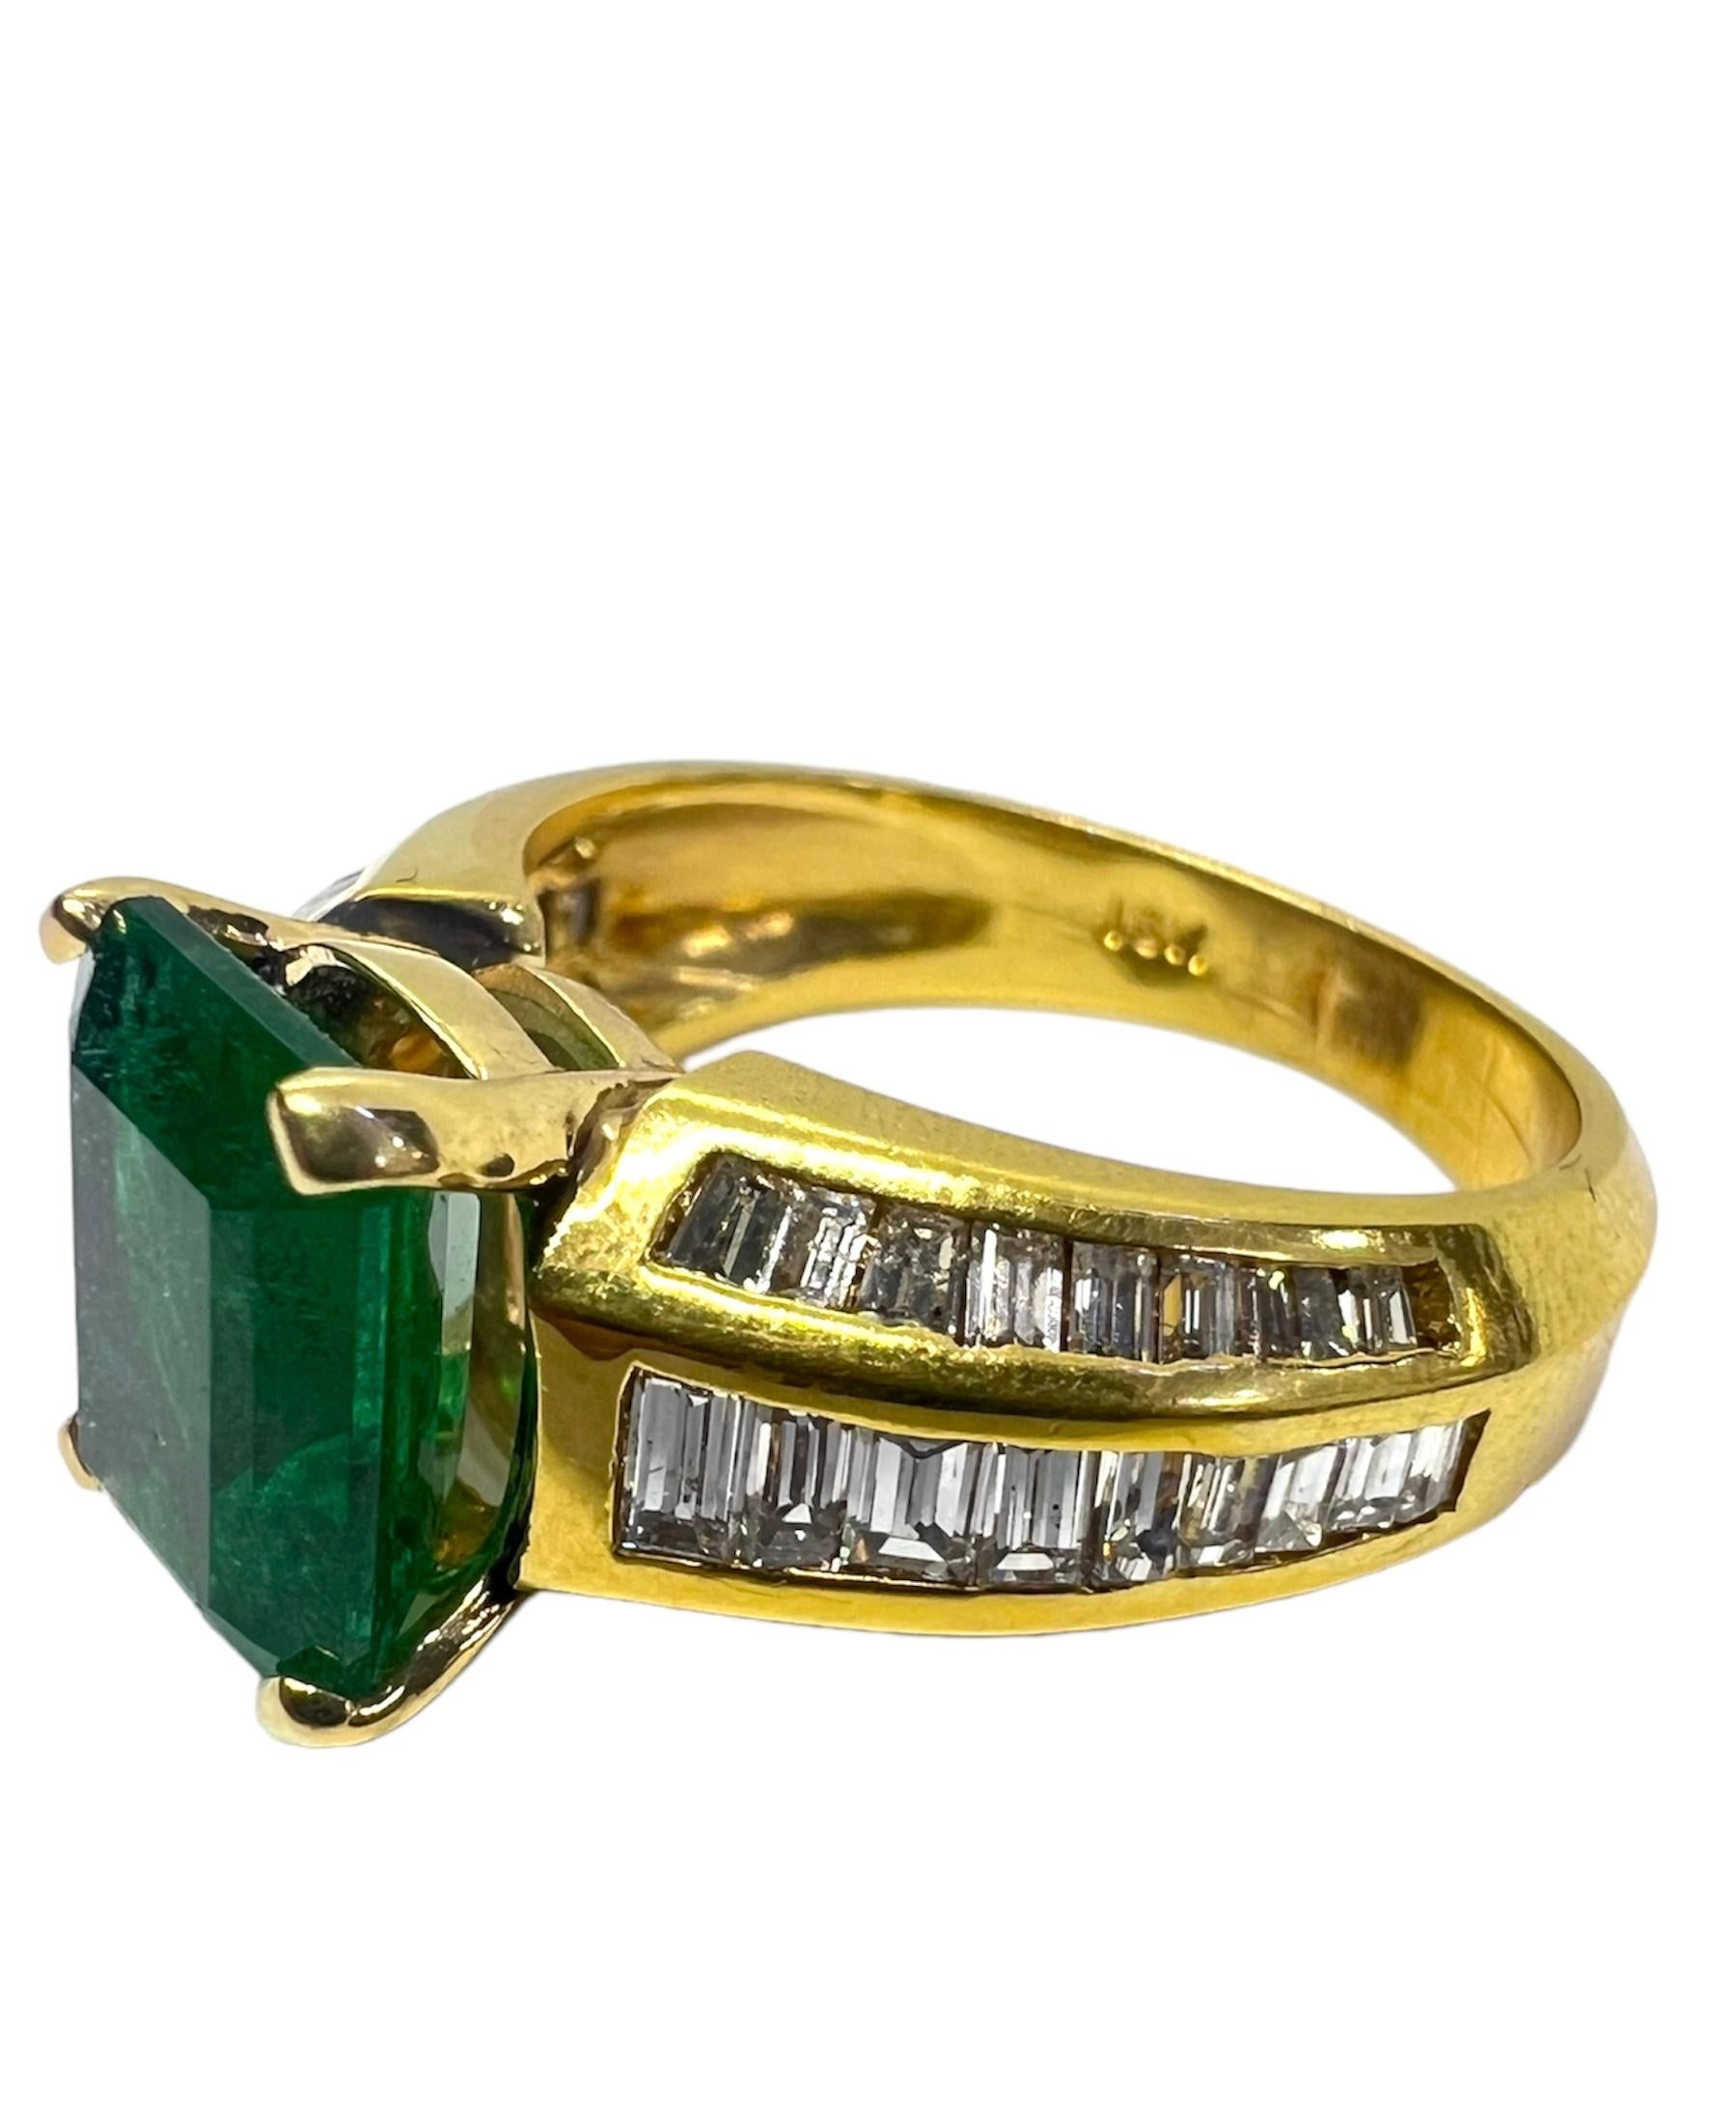 Ring aus 18 Karat Gelbgold mit Smaragd in der Mitte und Diamanten.

Sophia D von Joseph Dardashti LTD ist seit 35 Jahren weltweit bekannt und lässt sich vom klassischen Art-Déco-Design inspirieren, das mit modernen Fertigungstechniken verschmilzt.